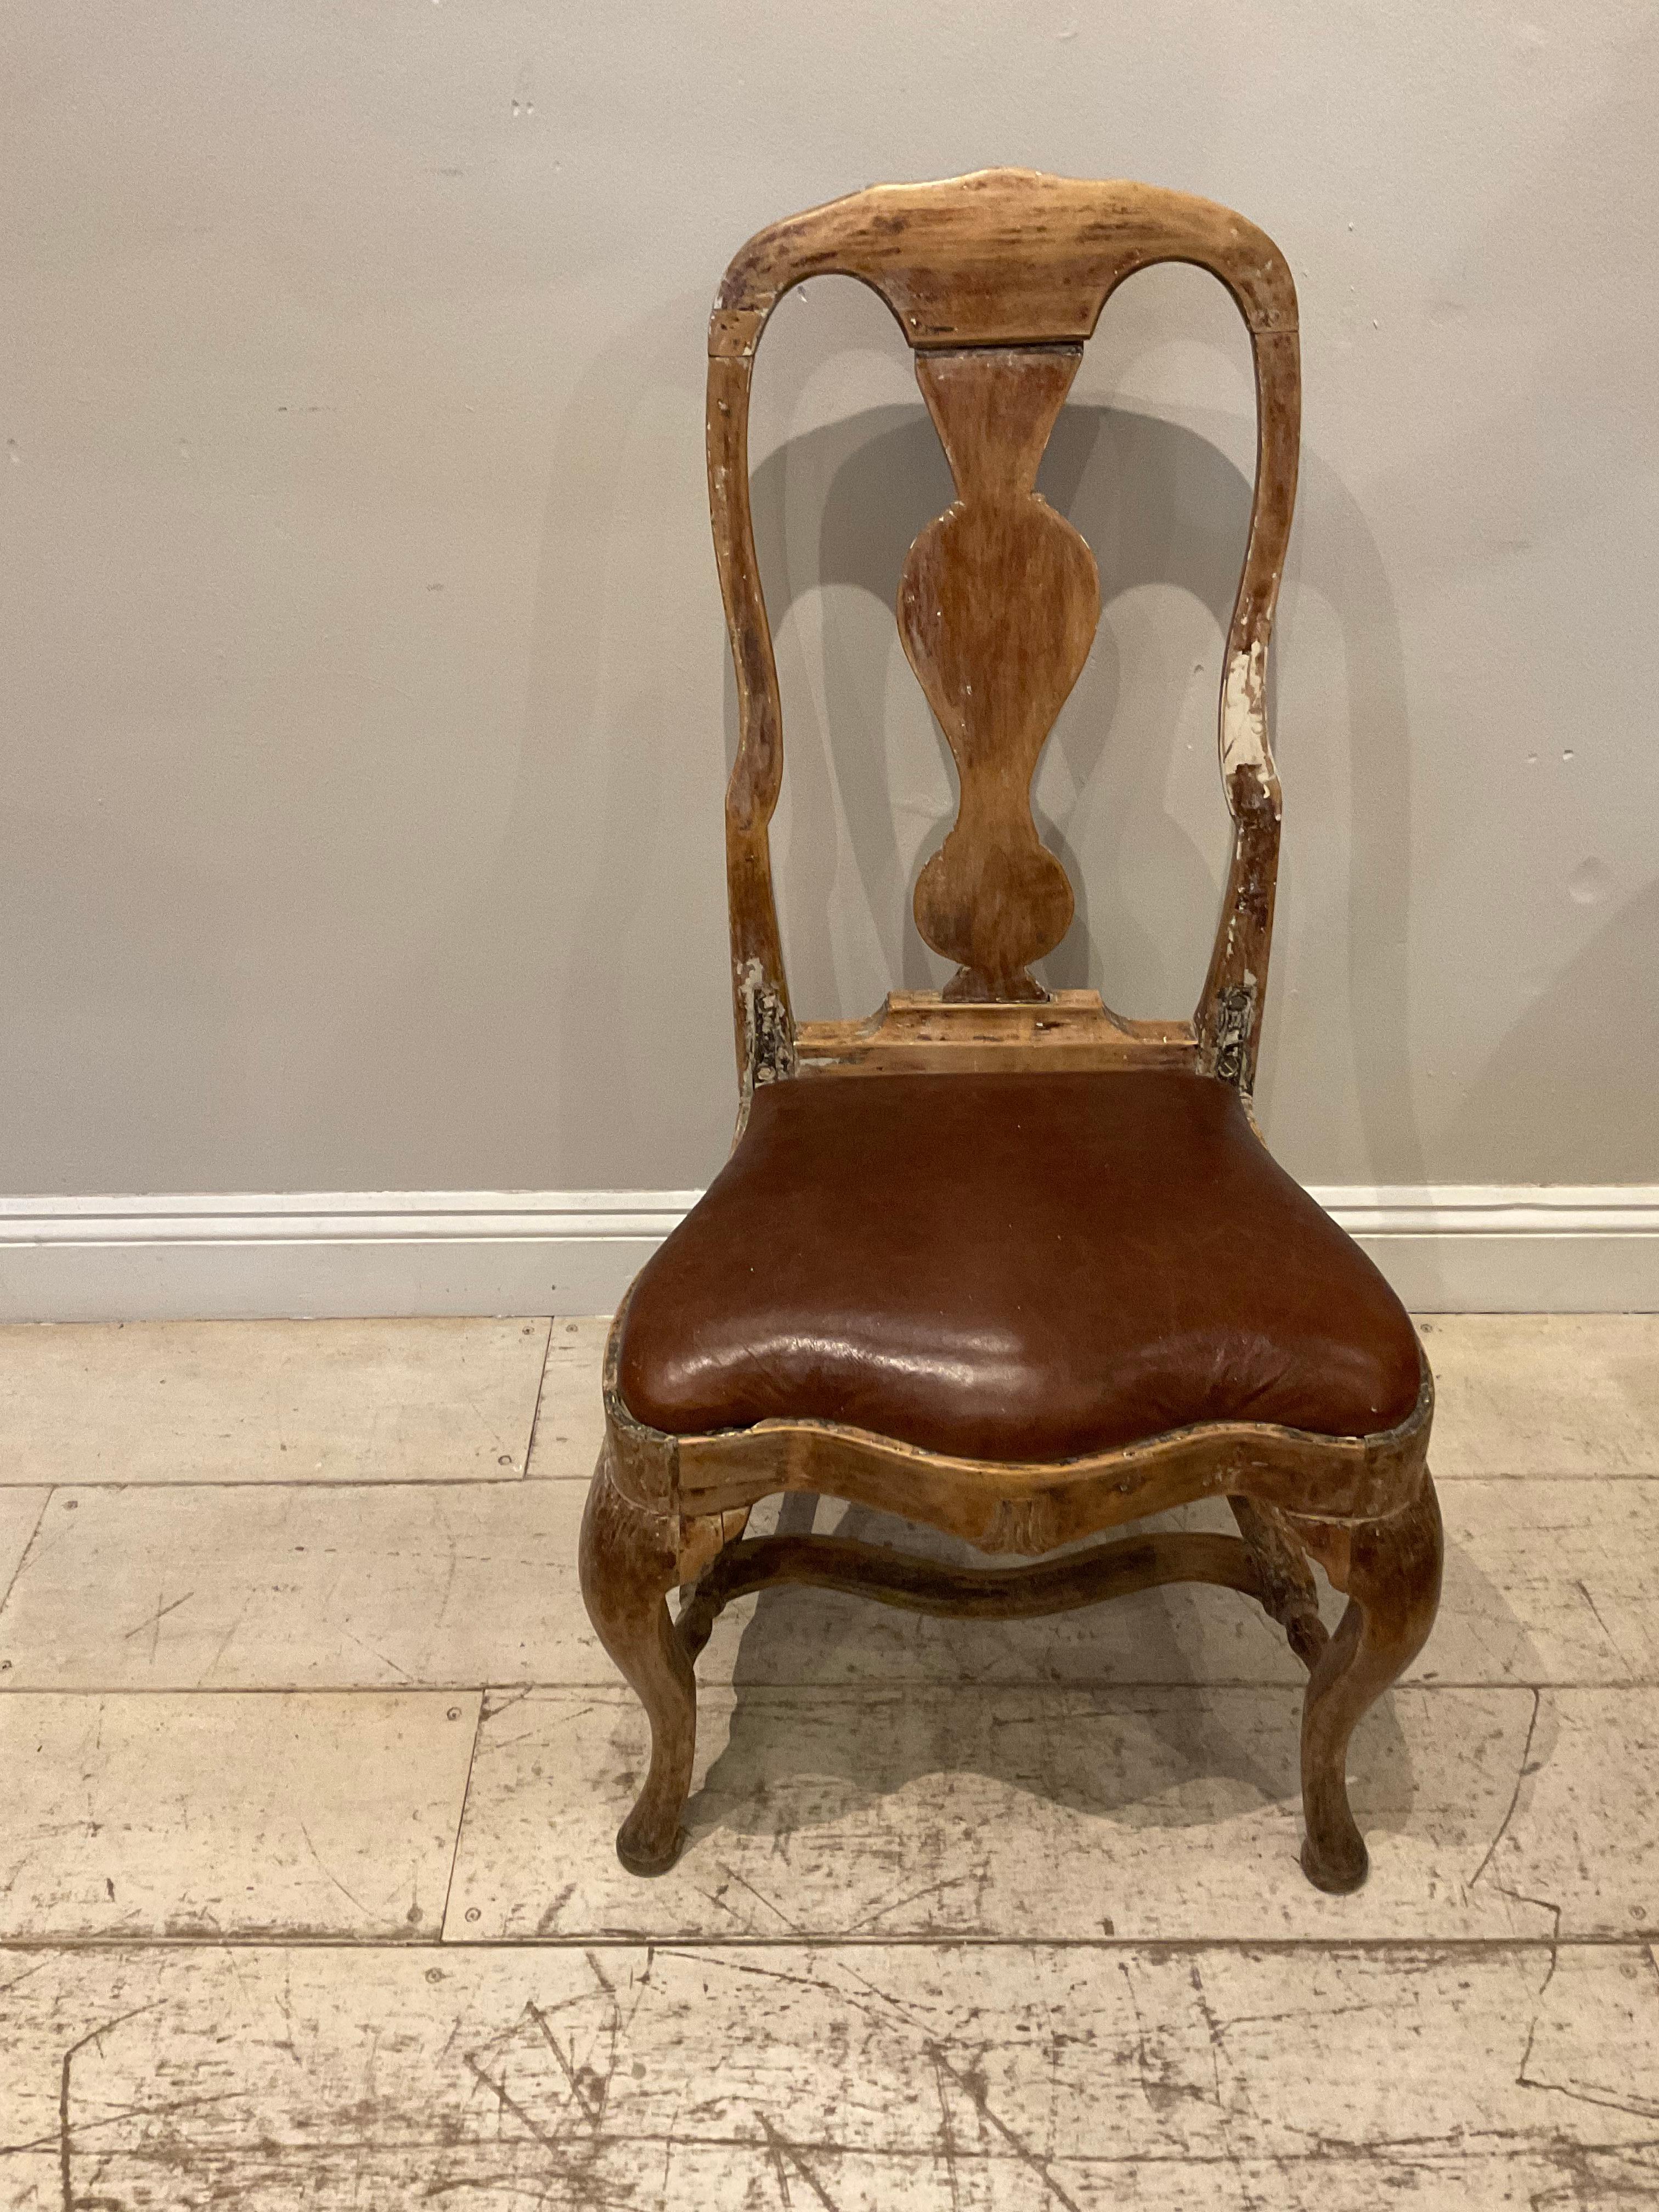 Chaise suédoise rococo du 18e siècle avec assise en cuir.
Une belle chaise simple à haut dossier datant d'environ 1760 qui a une patine simple, discrète et bien usée et un siège en cuir qui a été remplacé au fil du temps.

Parfait pour une